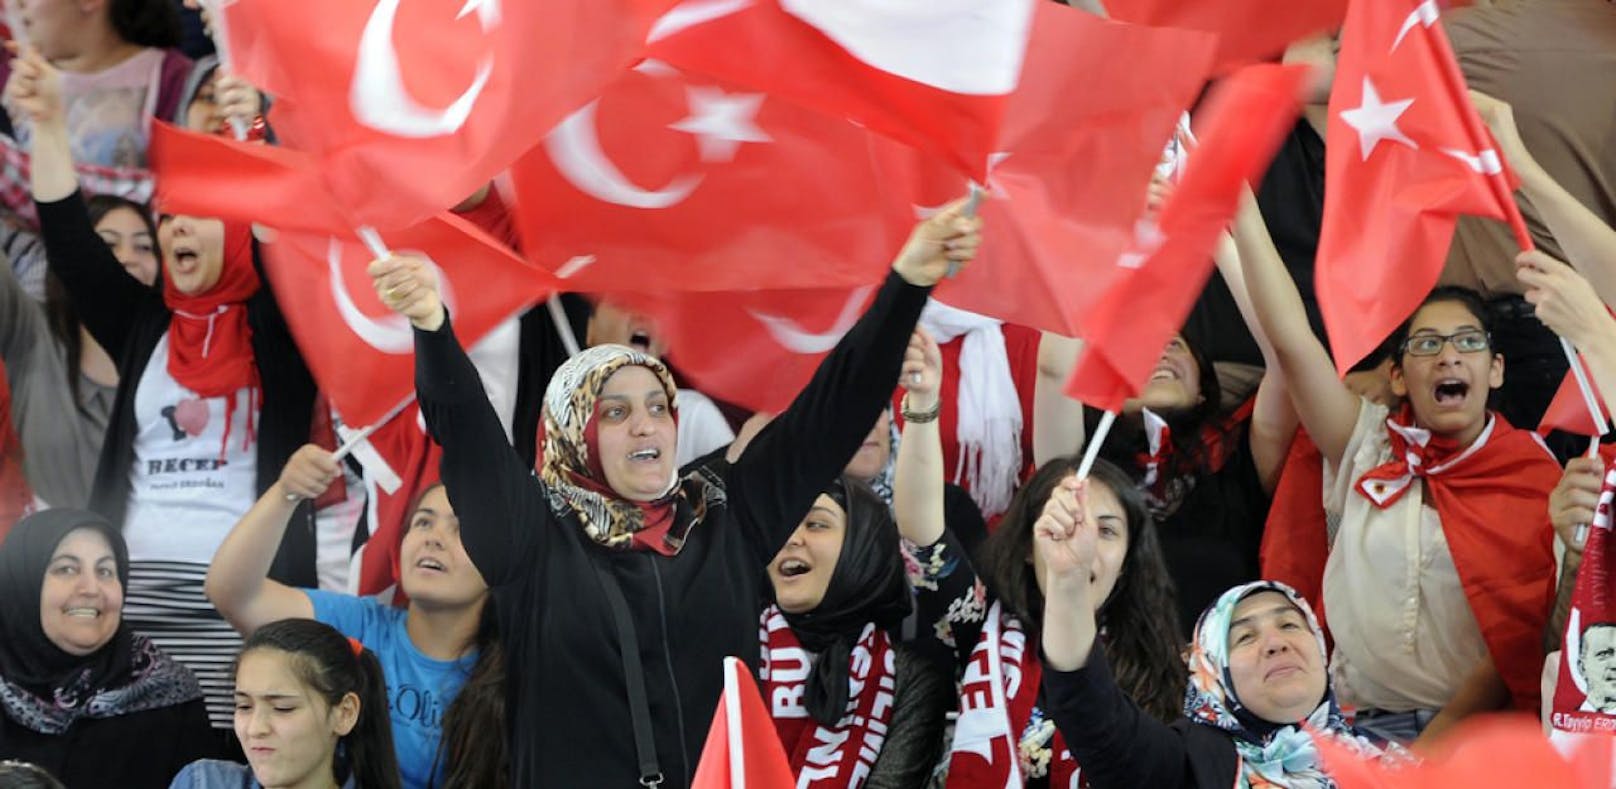 Erdogan-Fans bei einem Wahlauftritt des Politikers in Wien im Jahr 2014.